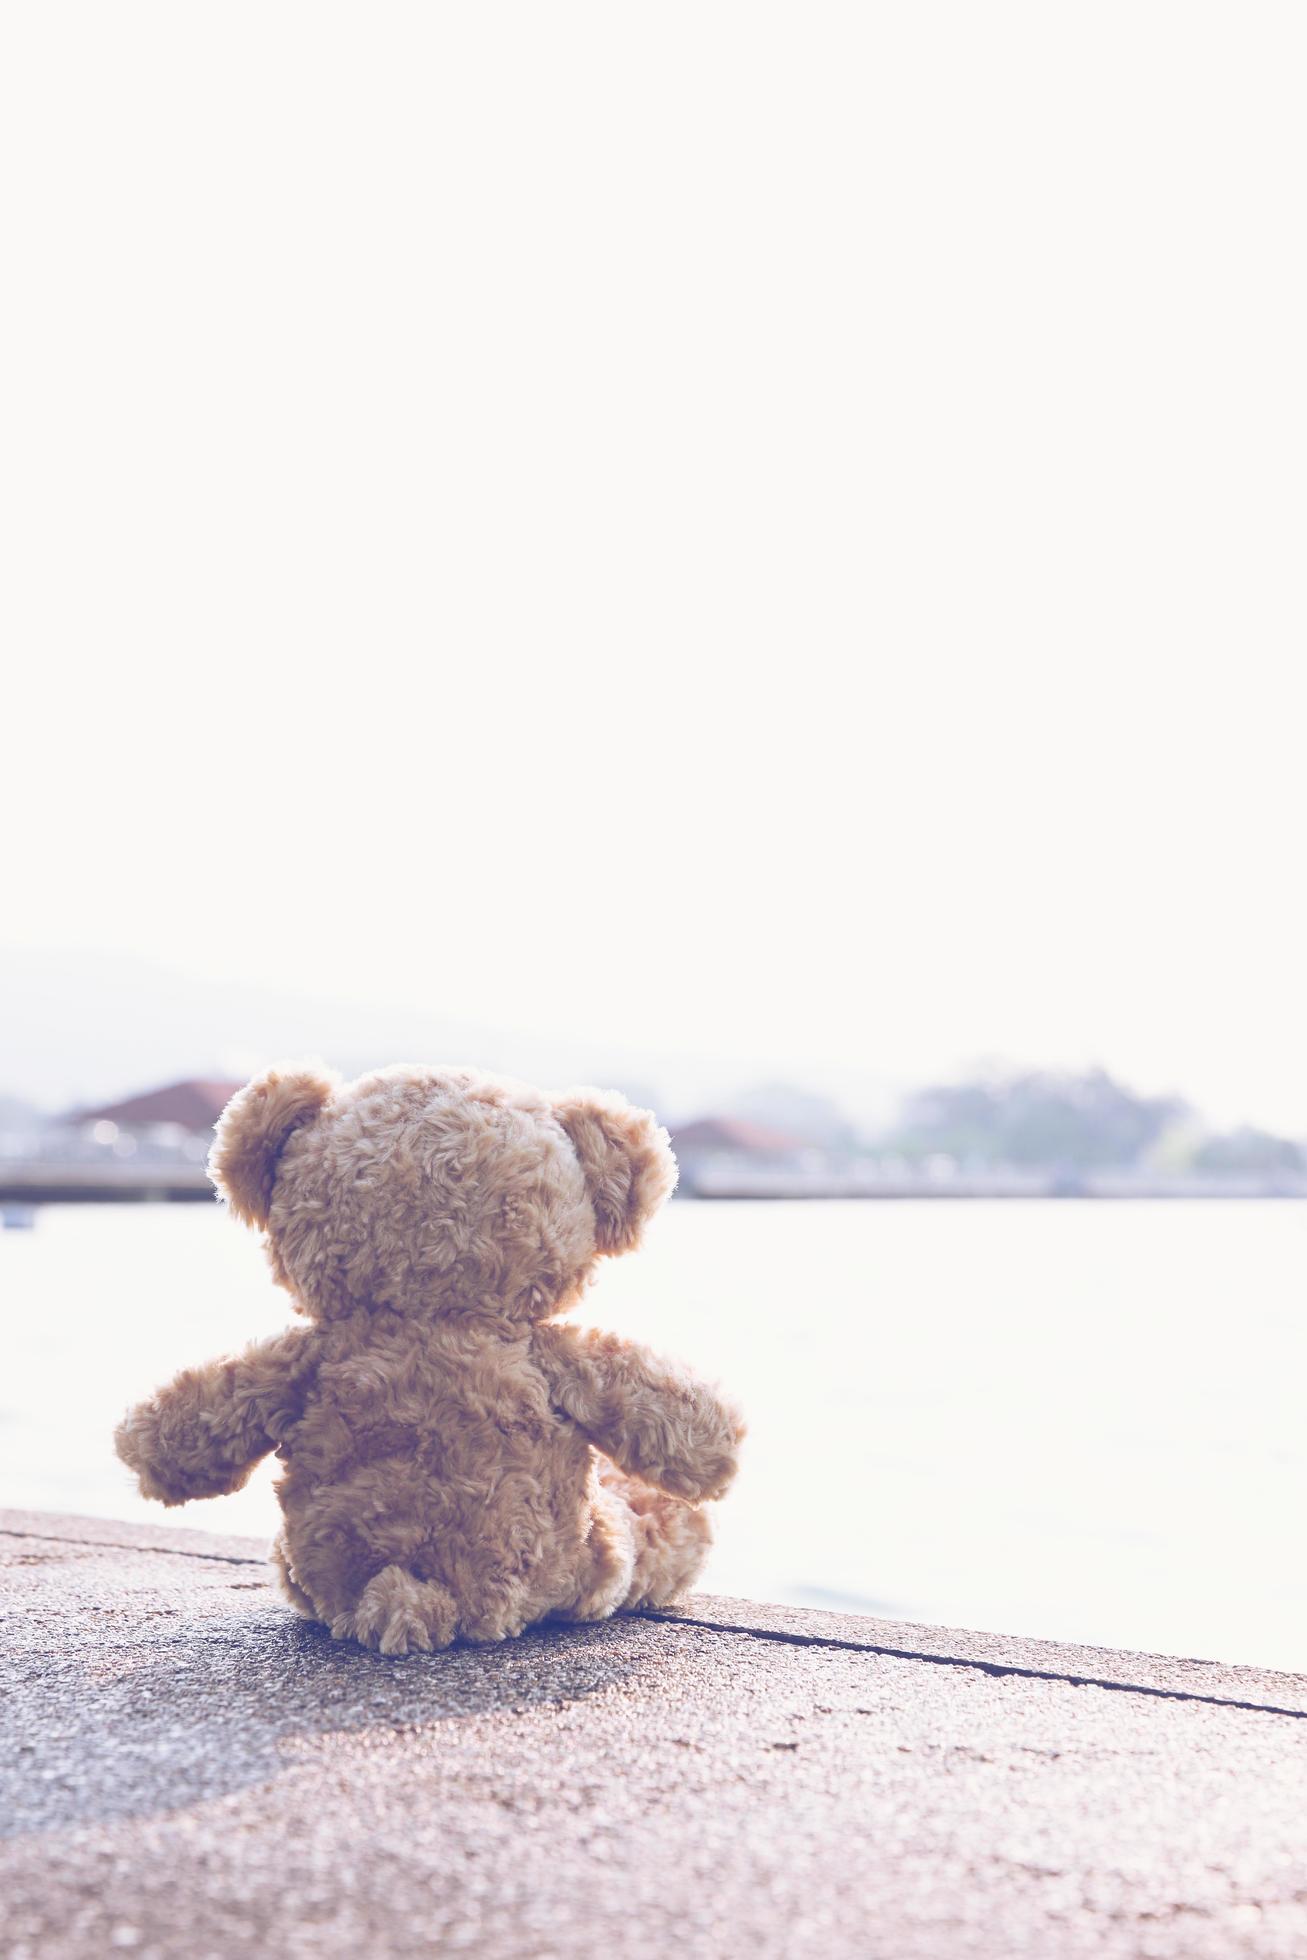 Einsam Hintergrundbild 1307x1960. Ein Trauriger Teddybär Sitzt Allein Auf Einer Brücke Und Blickt Einsam Mit Kopierraum Auf Das Meer. Spielzeug, Puppe, Für Kinder. 7306662 Stock Photo Bei Vecteezy